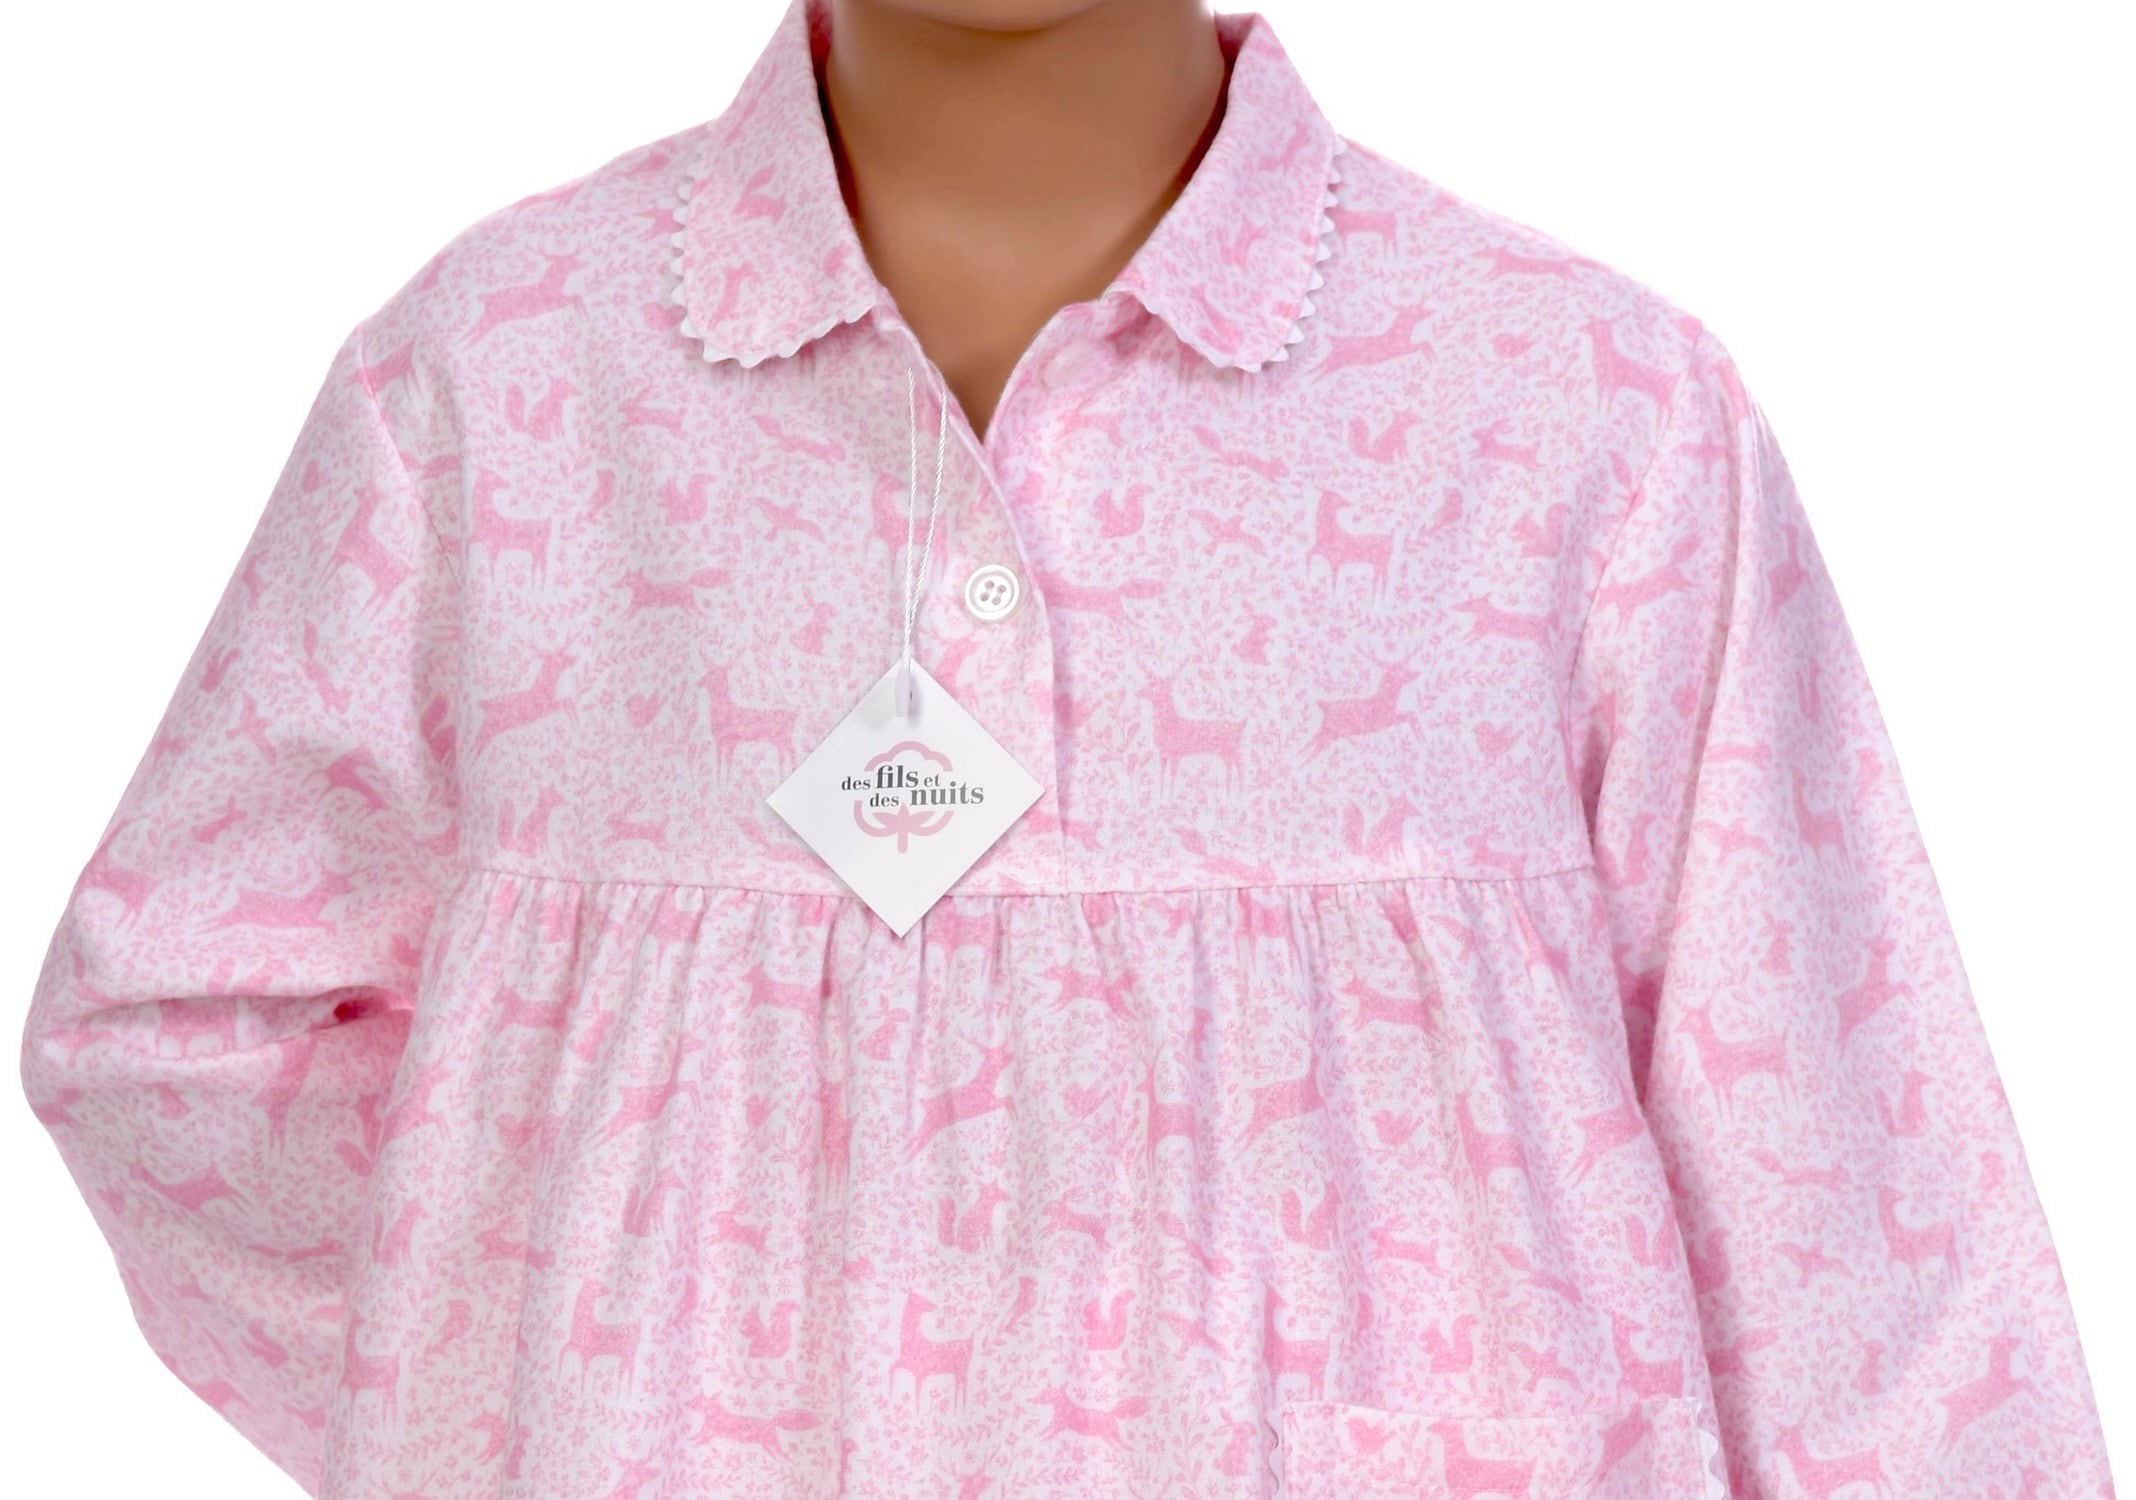 Pyjama hiver pour fille en pilou 100% coton, imprimé Forêt enchantée.